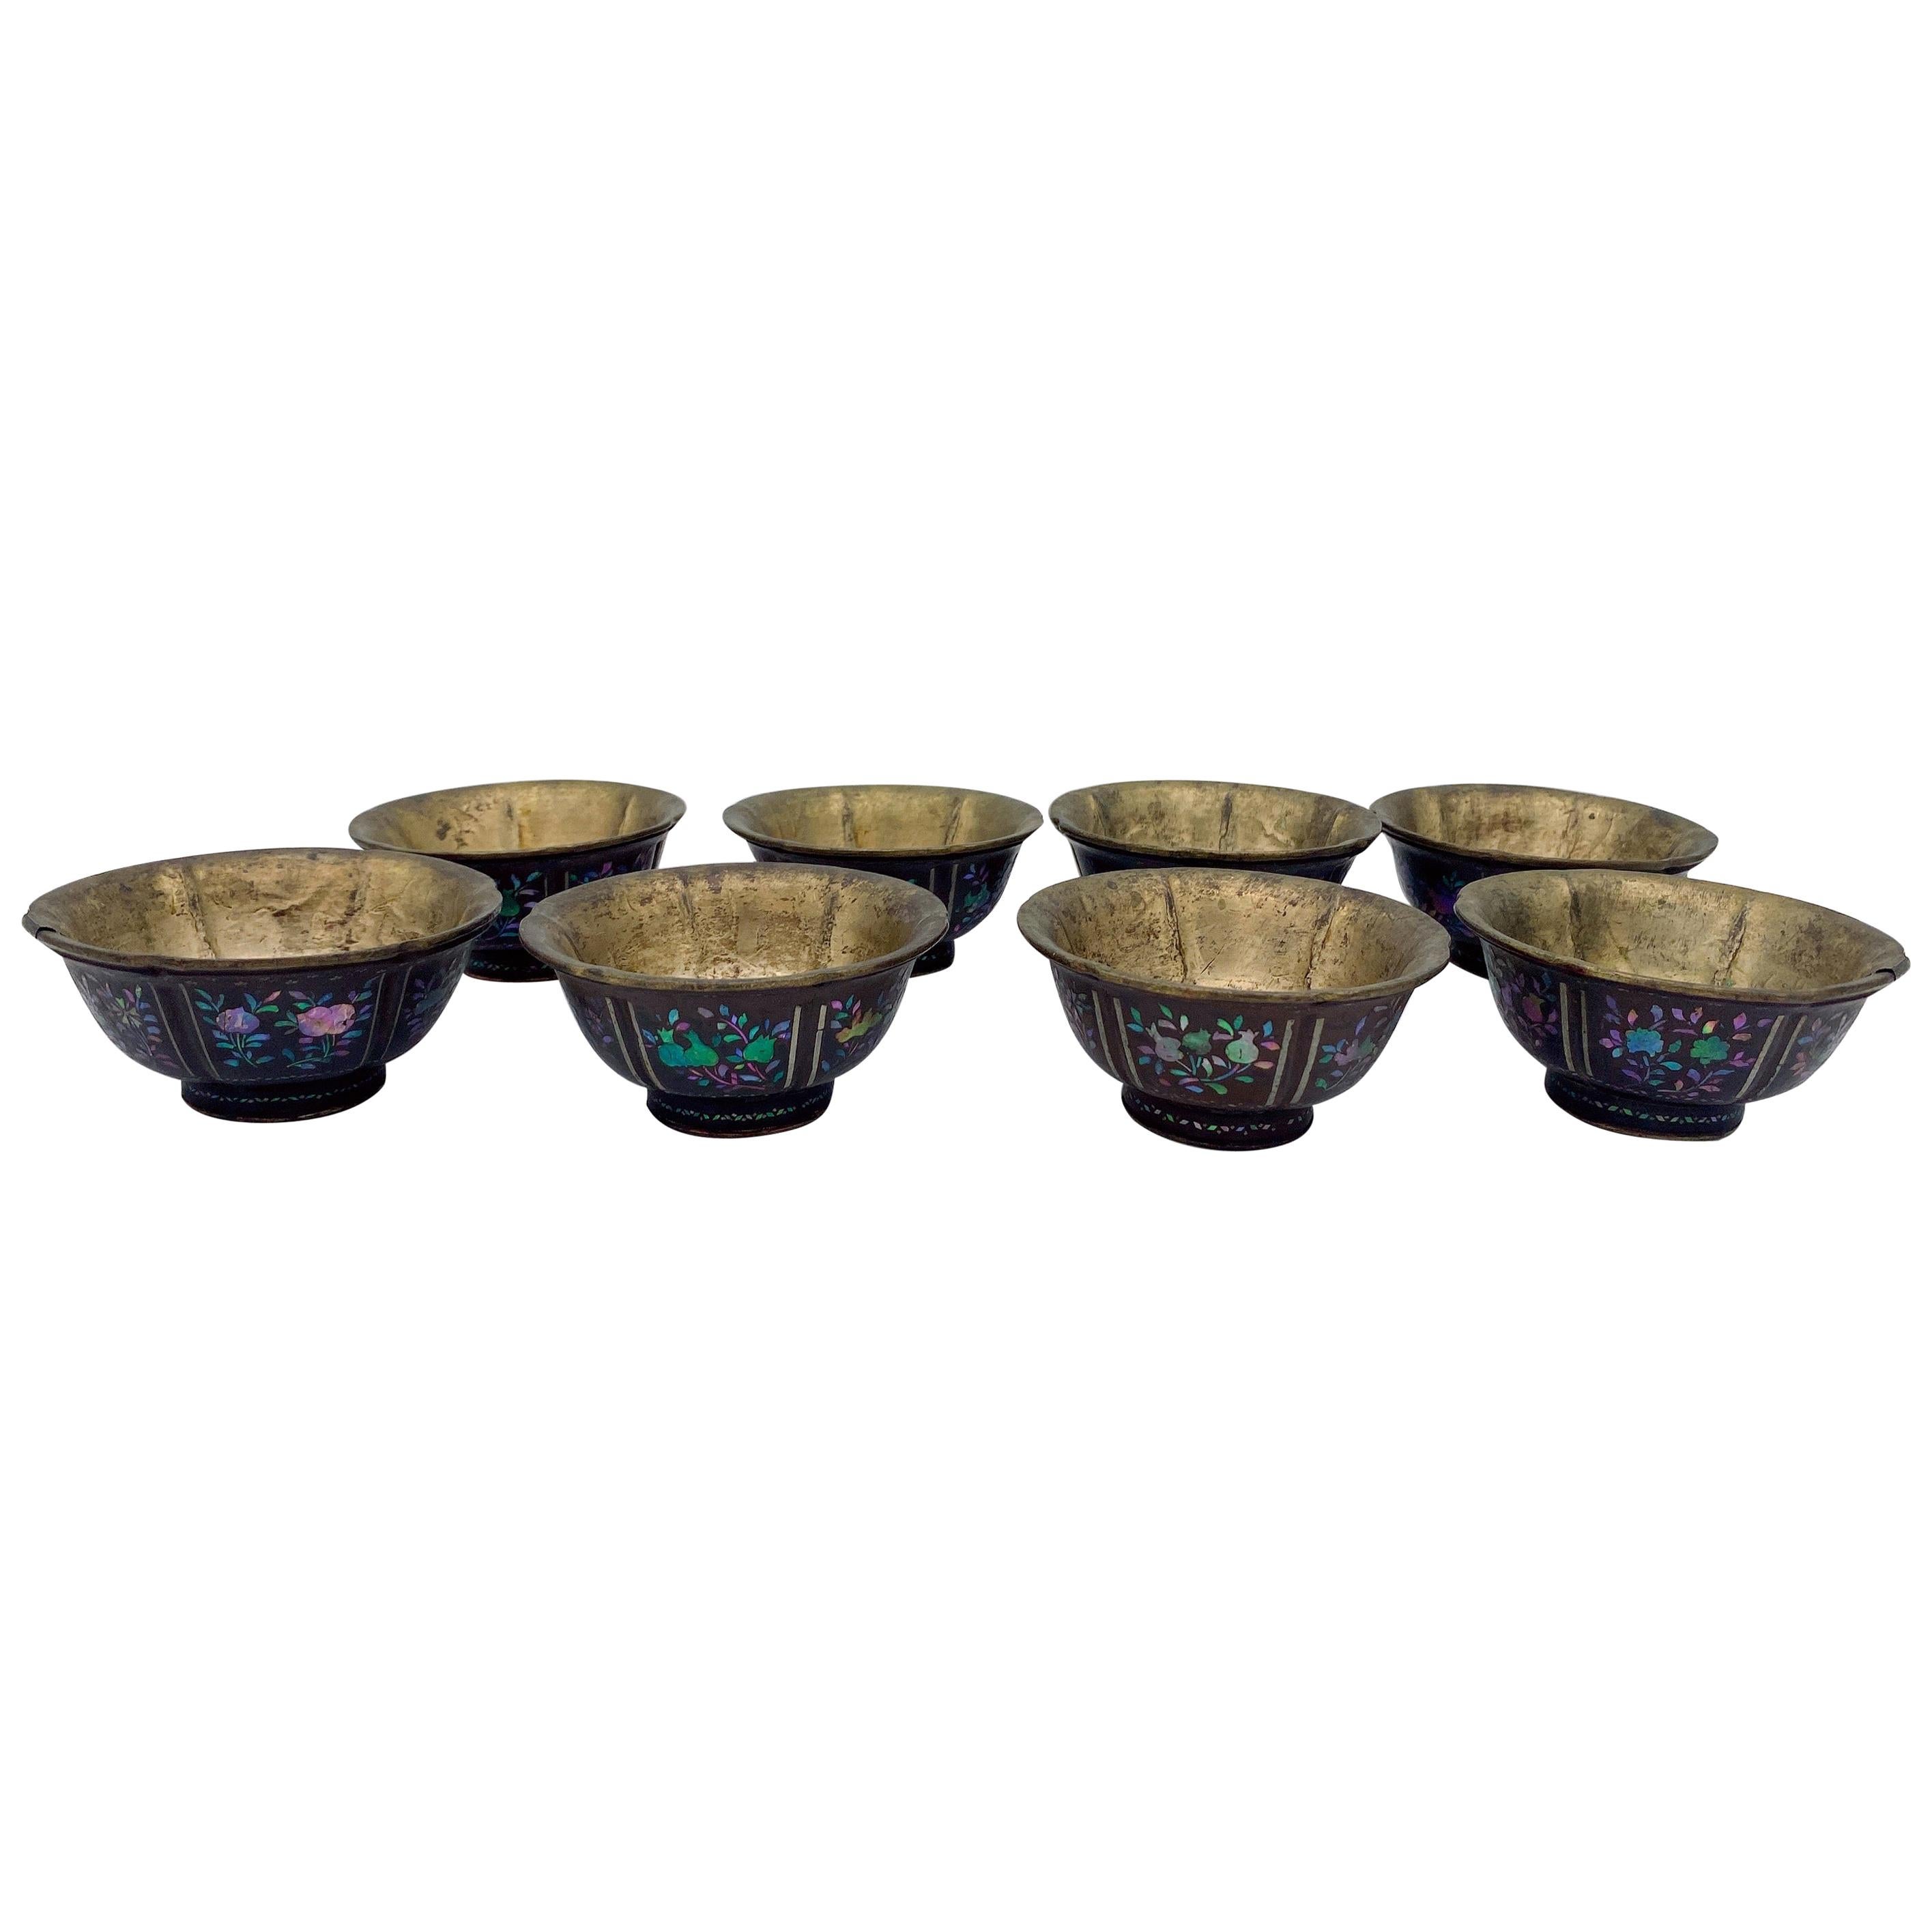 Ensemble de 8 bols chinois en laque argentée avec incrustation de nacre, datant du 18e siècle